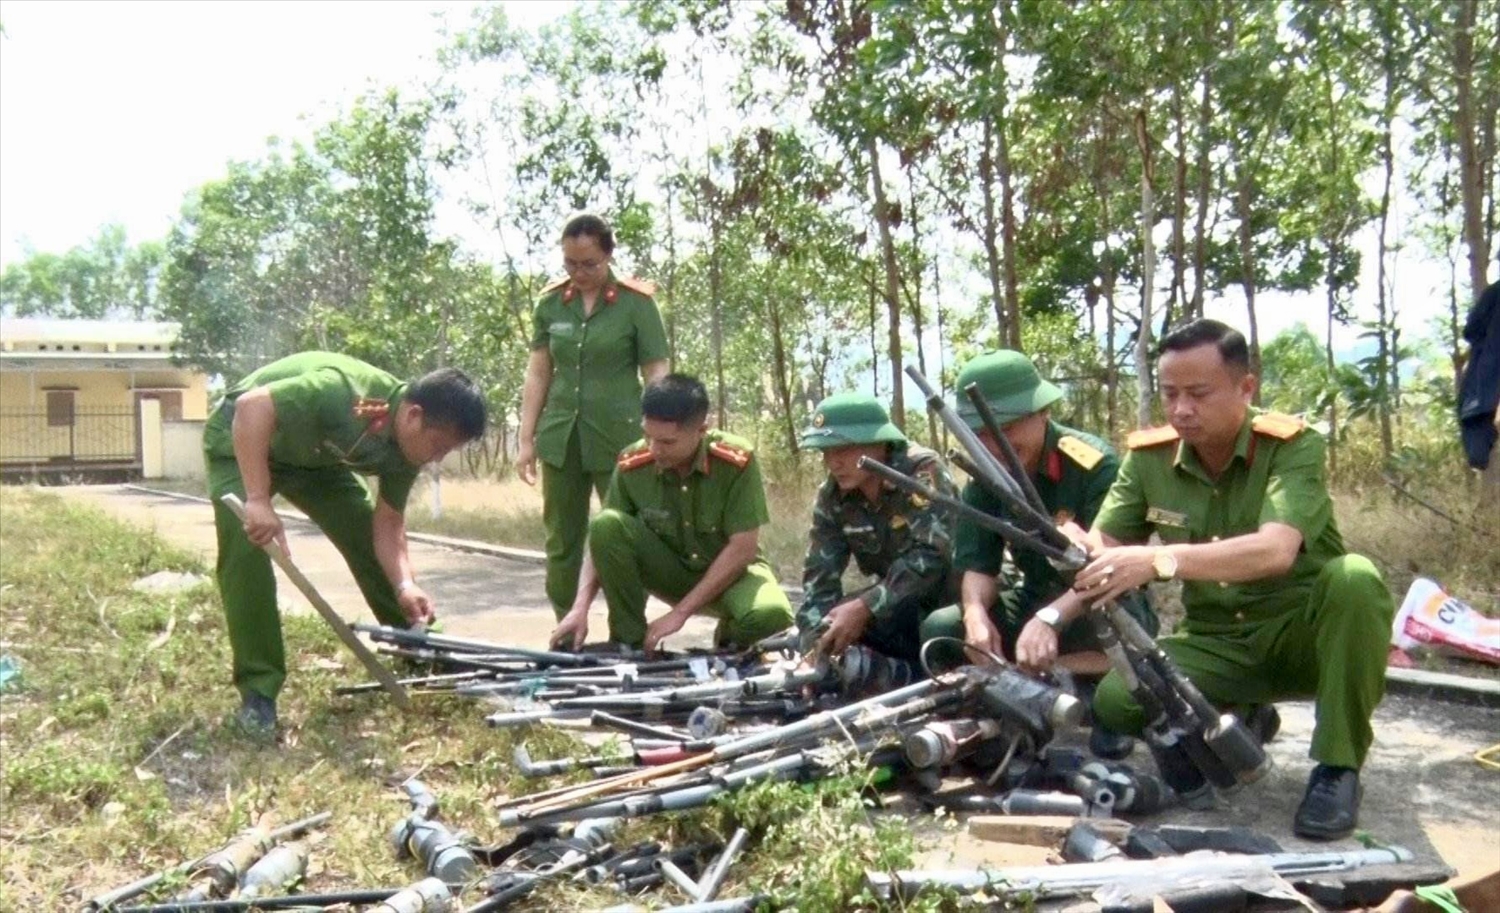 Quá trình tiêu huỷ vũ khí tự chế và linh kiện lắp ráp súng tự chế được lực lượng chức năng huyện Kbang tiến hành đảm bảo các quy định của pháp luật